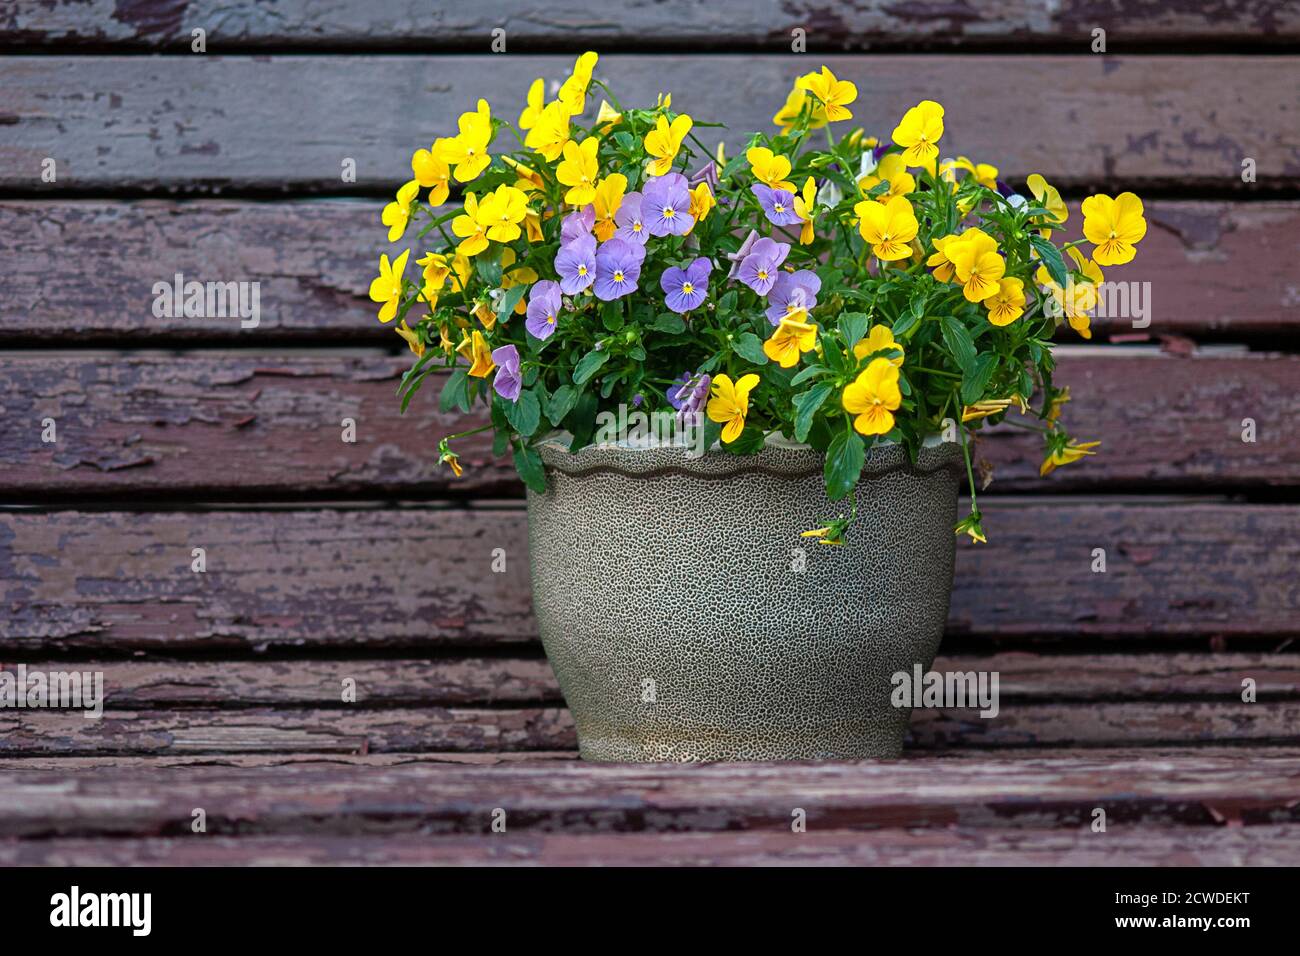 Fleurs de pansy jaunes et violettes dans le pot de fleurs Banque D'Images